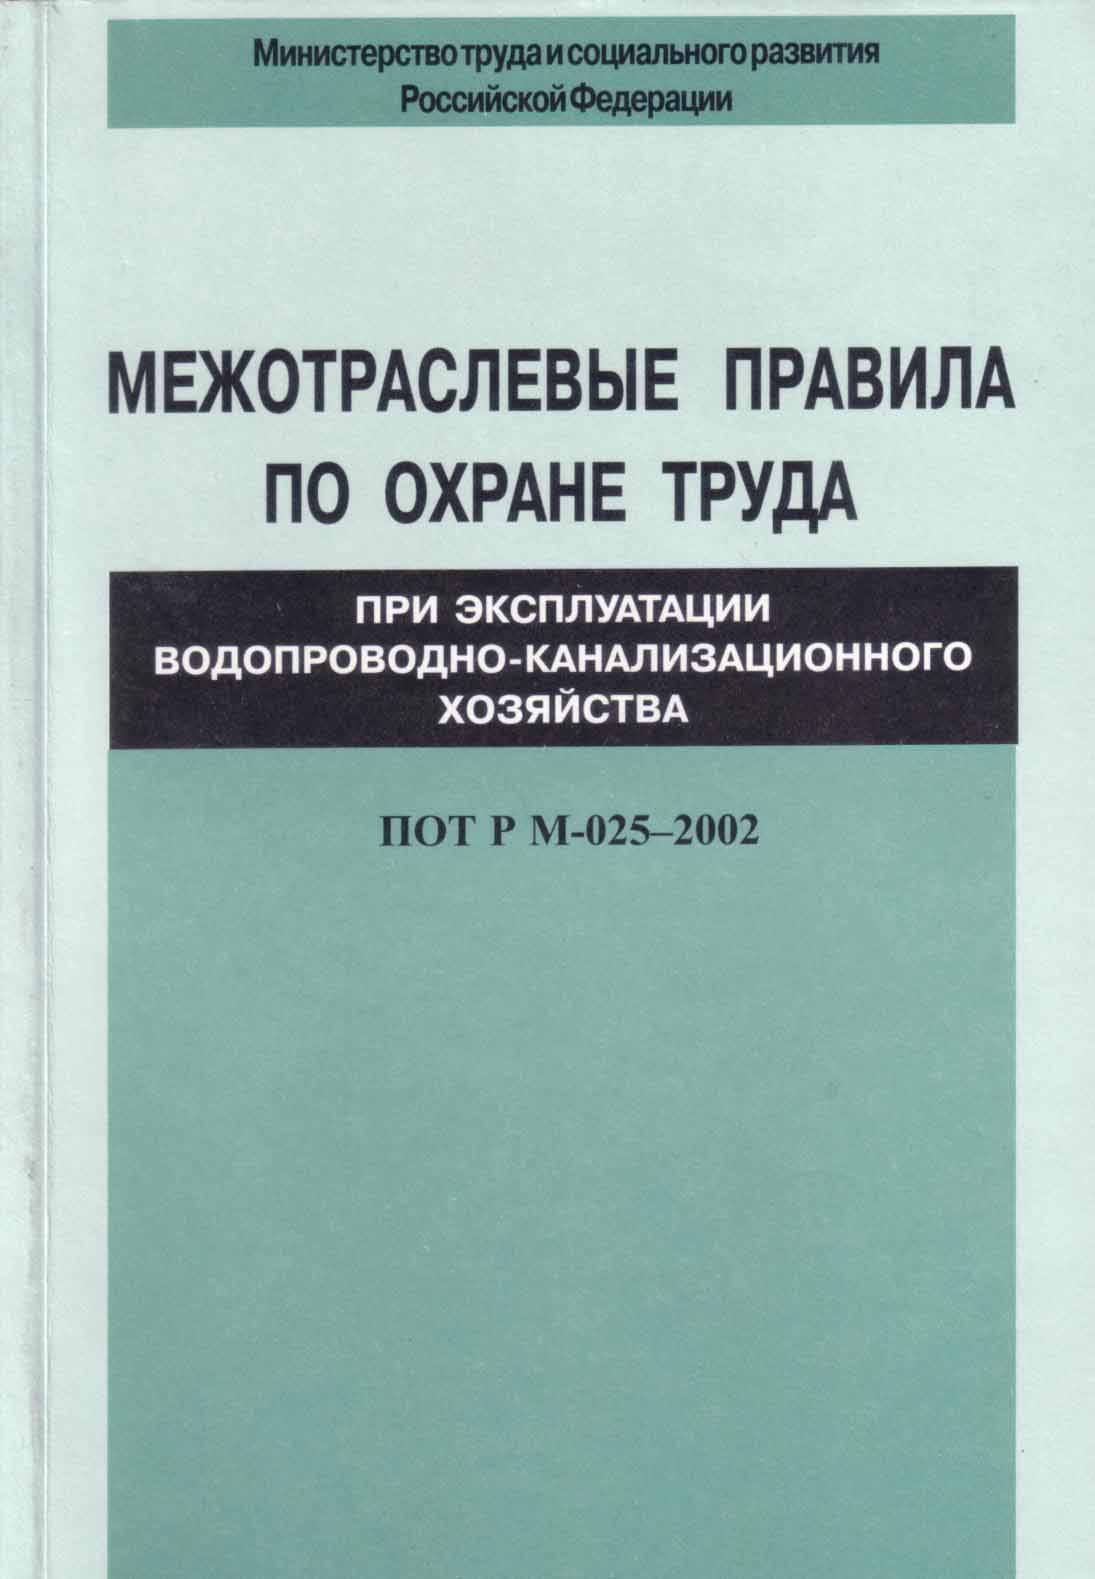 ПОТ РМ 016 2001 (Правила охраны труда)